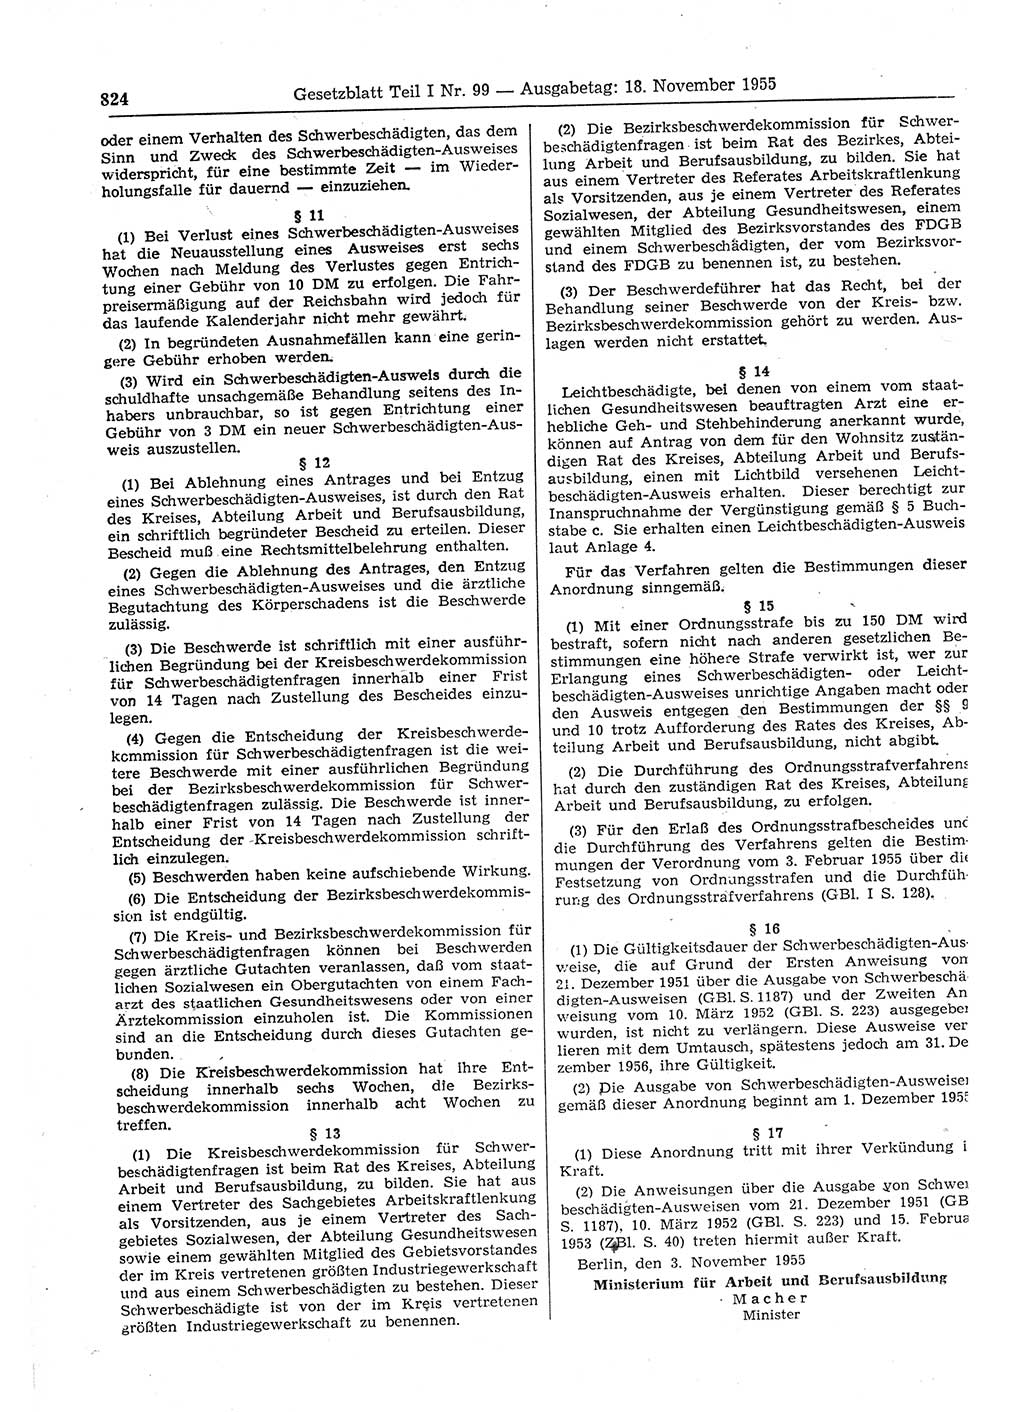 Gesetzblatt (GBl.) der Deutschen Demokratischen Republik (DDR) Teil Ⅰ 1955, Seite 824 (GBl. DDR Ⅰ 1955, S. 824)